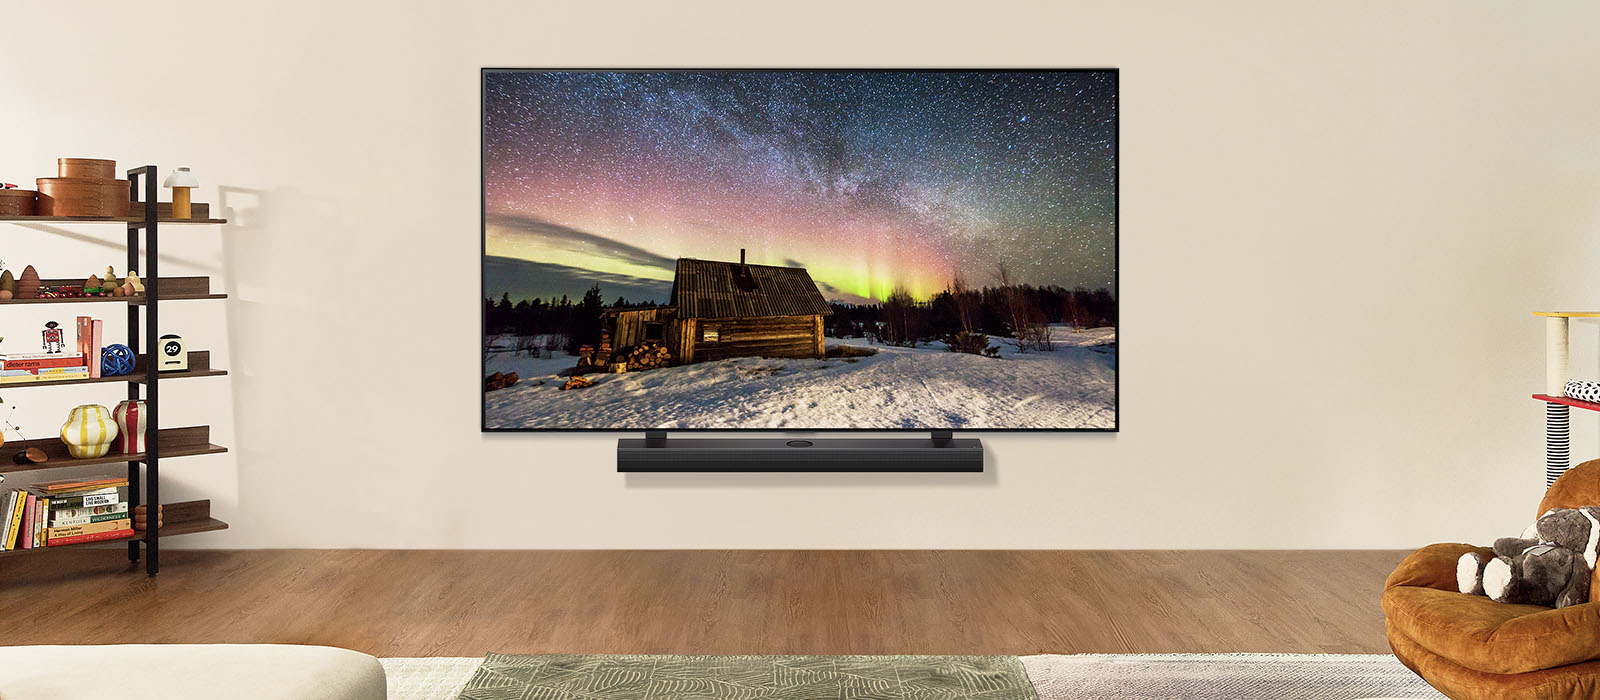 LG TV és LG hangprojektor képe egy modern nappaliban napközben. A sarki fény képe a képernyőn az ideális fényerővel jelenik meg.